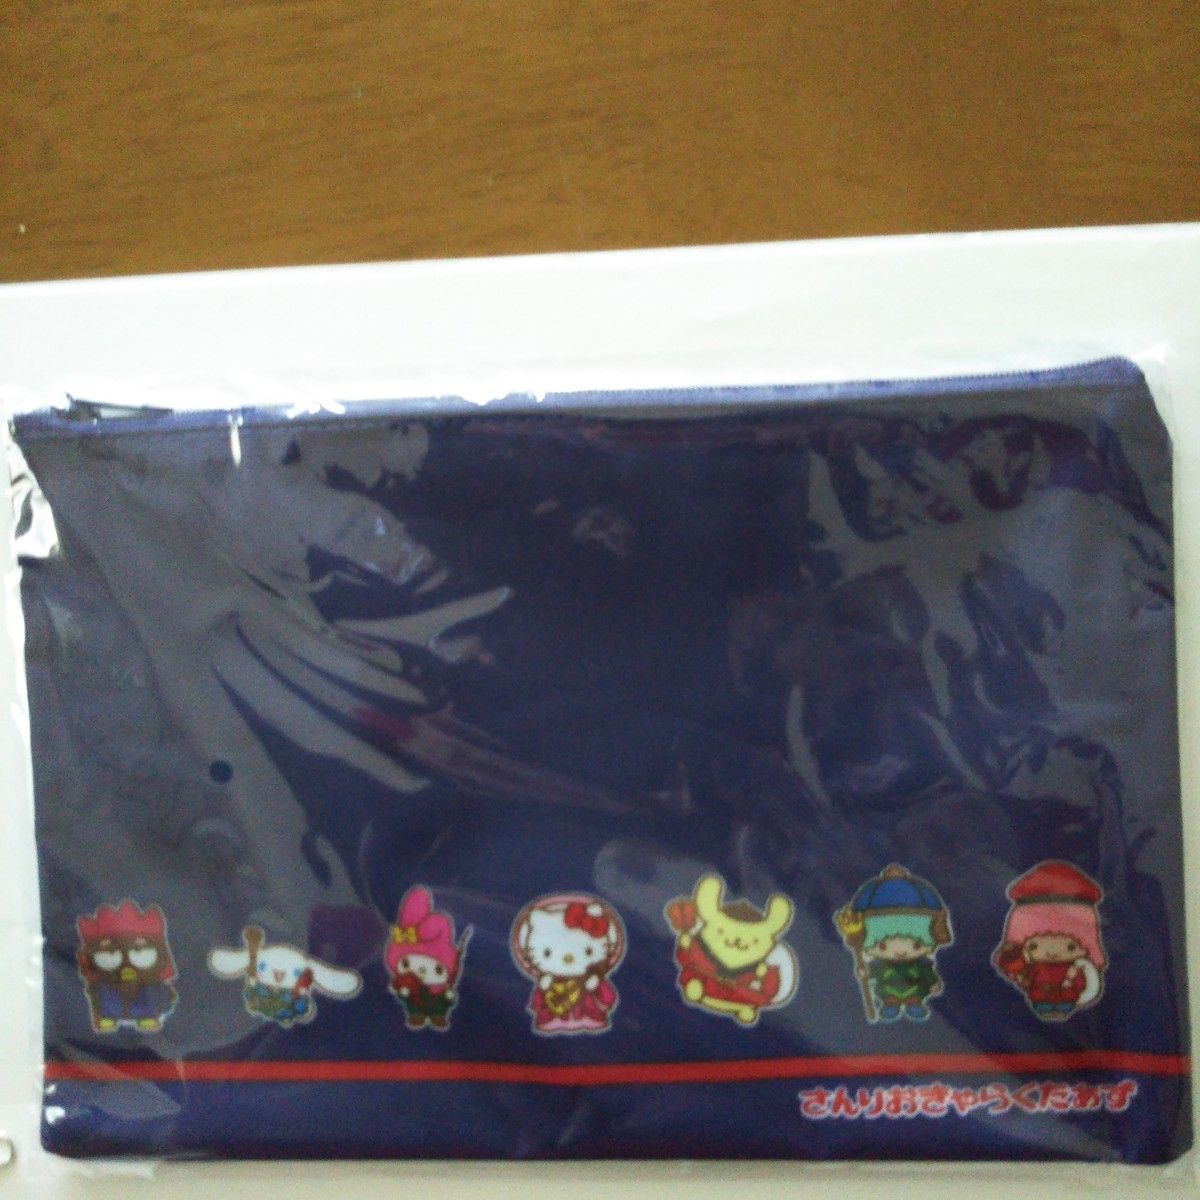 サンリオキャラクターのポーチ 非売品 横235mm×縦約160mm キャラクター七福神、色は紺になります。sanrio